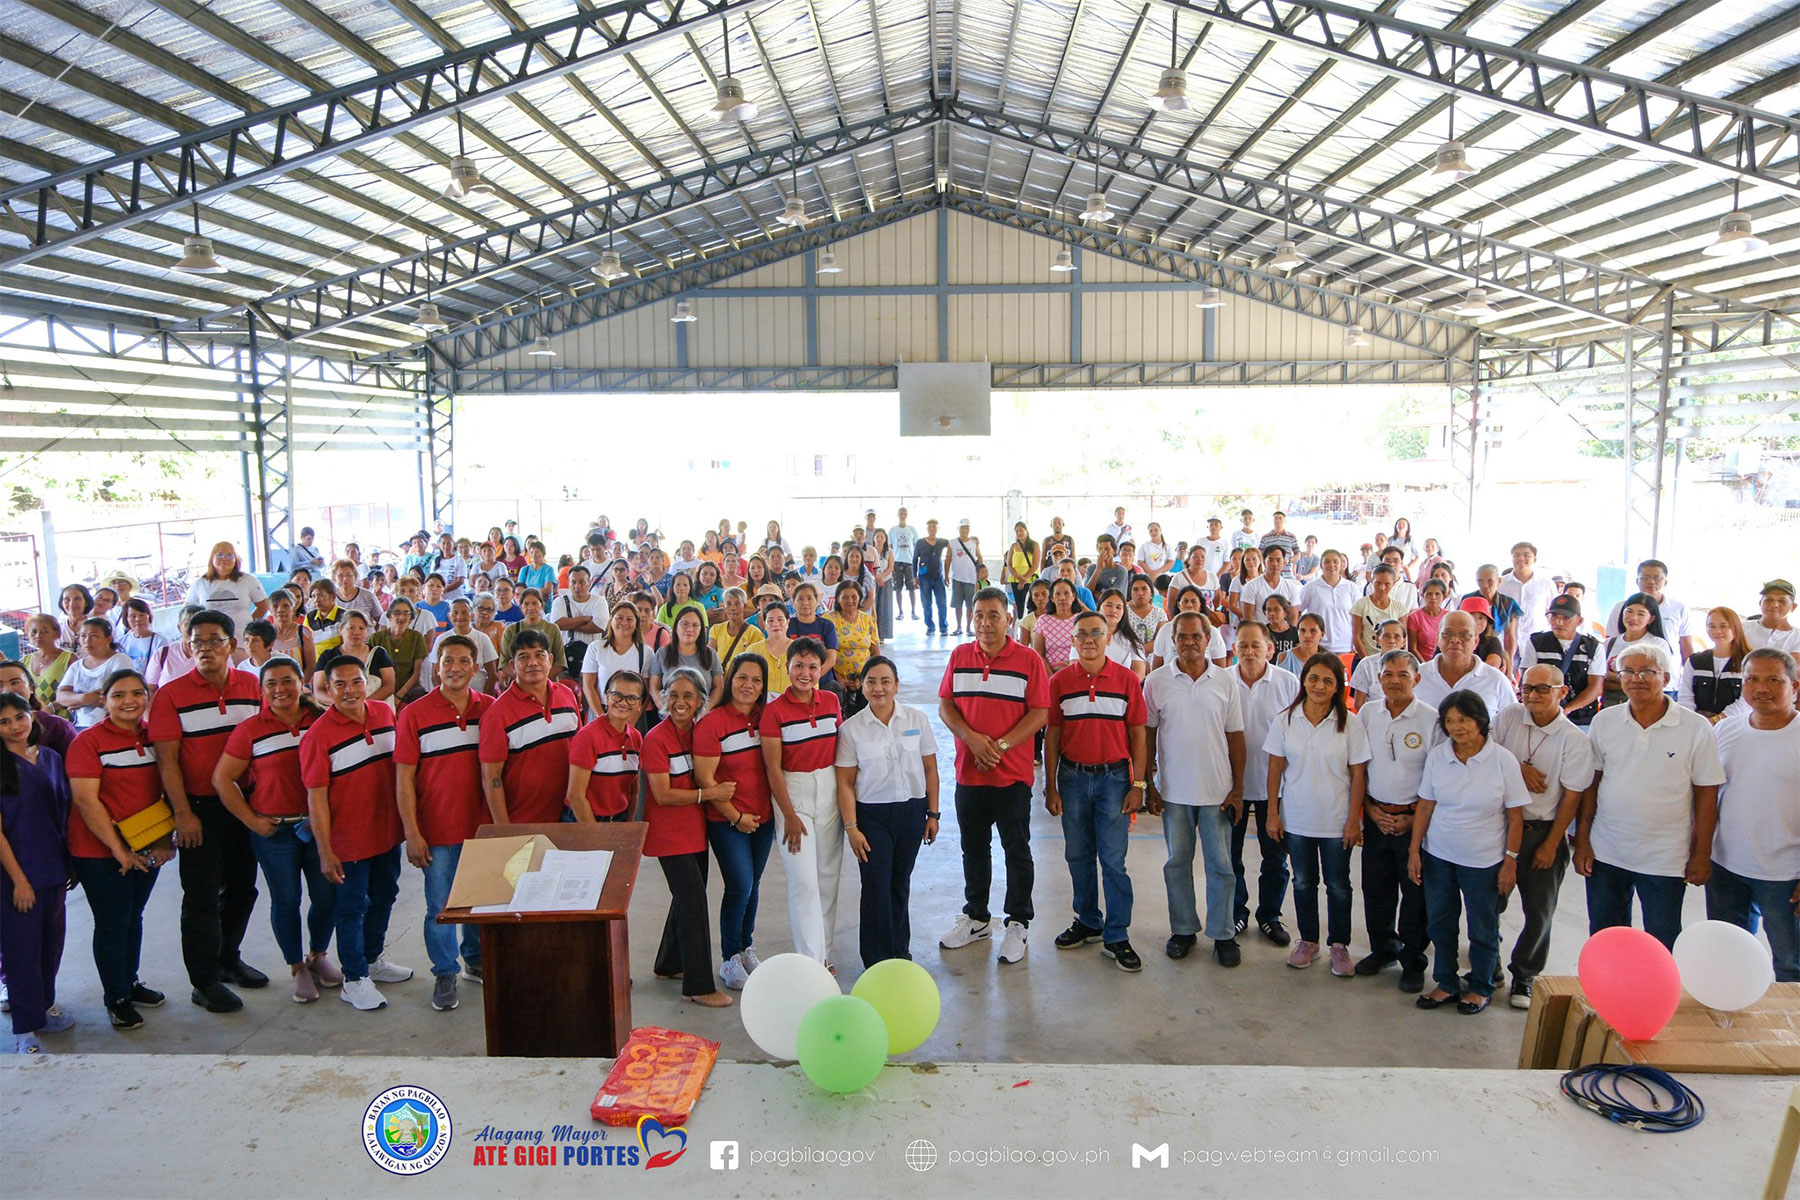 Barangay Assembly